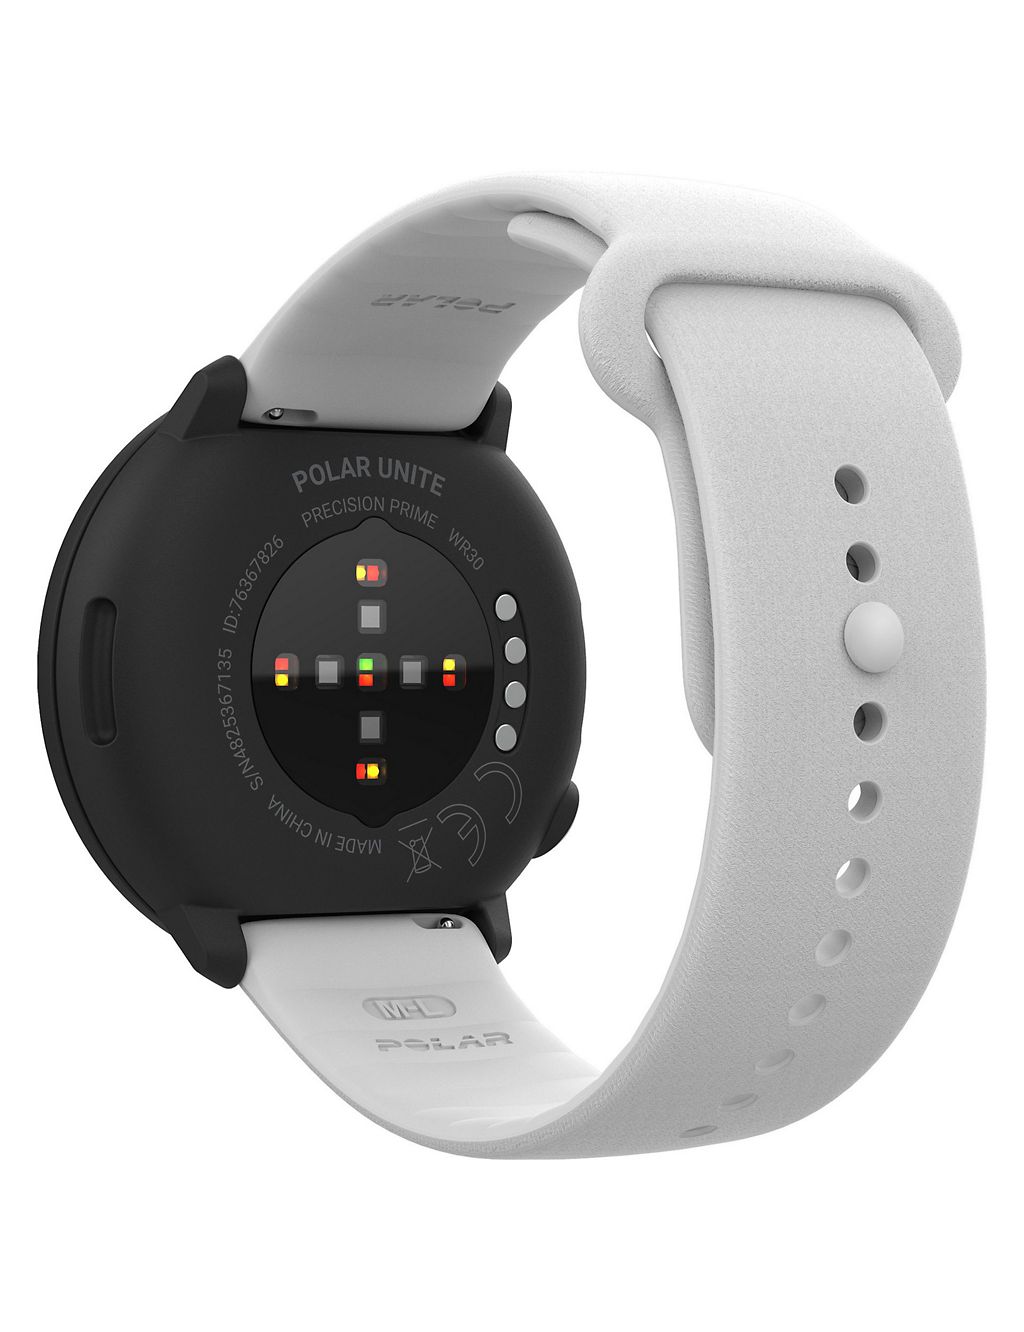 Polar Unite Fitness Tracker White Silicone Smartwatch 6 of 10